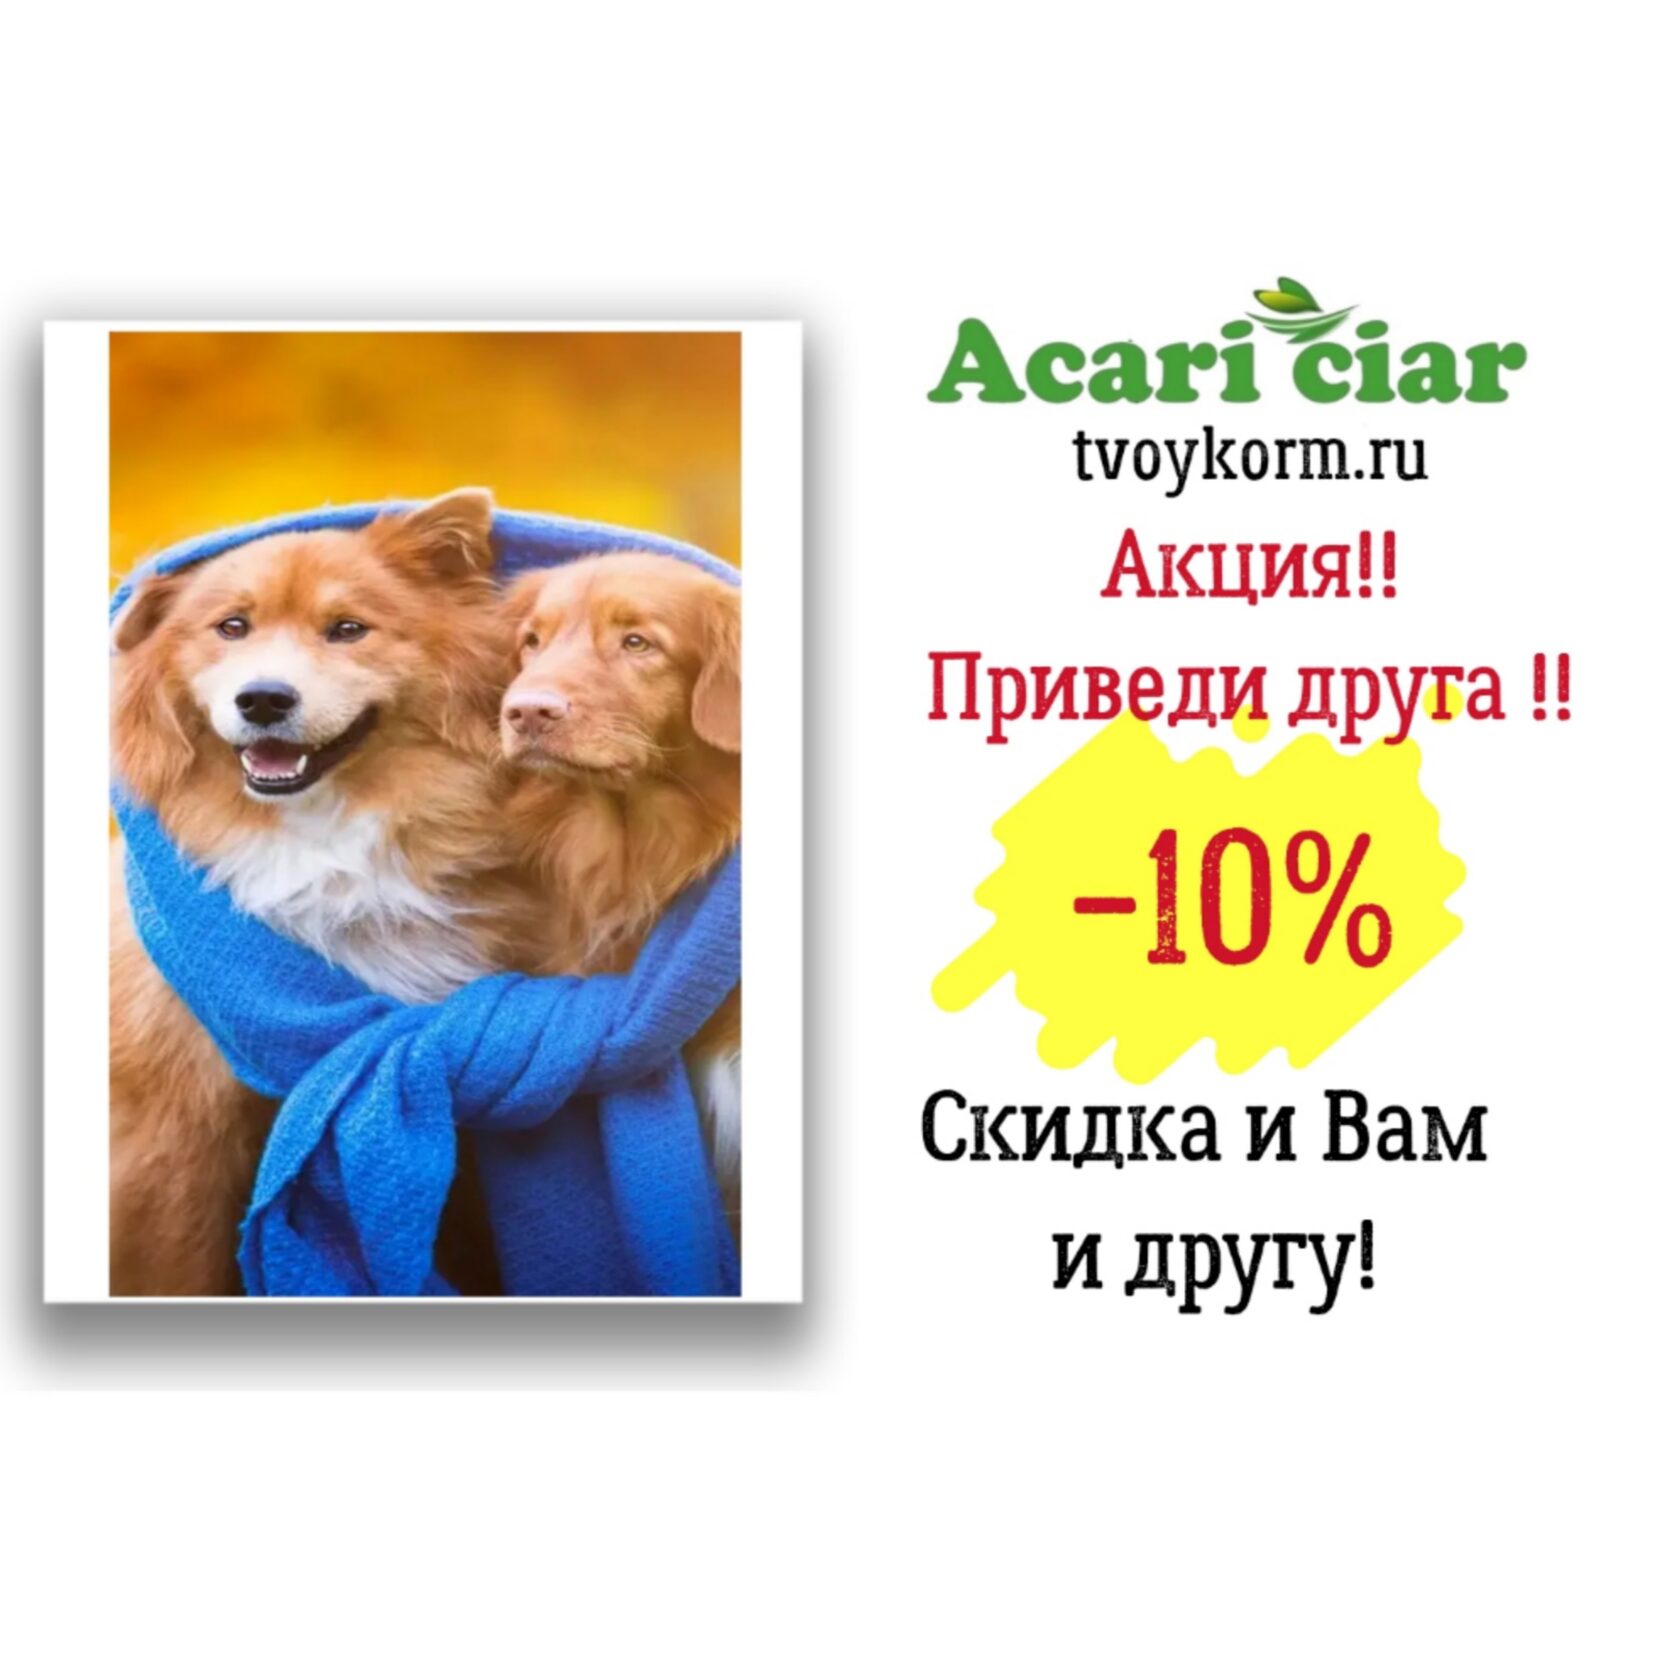 Твой корм Севастополь. Акари Киар для кошек. Корм Акари для щенков Севастополь. Какой интернет магазин для животных продает Acari Ciar.